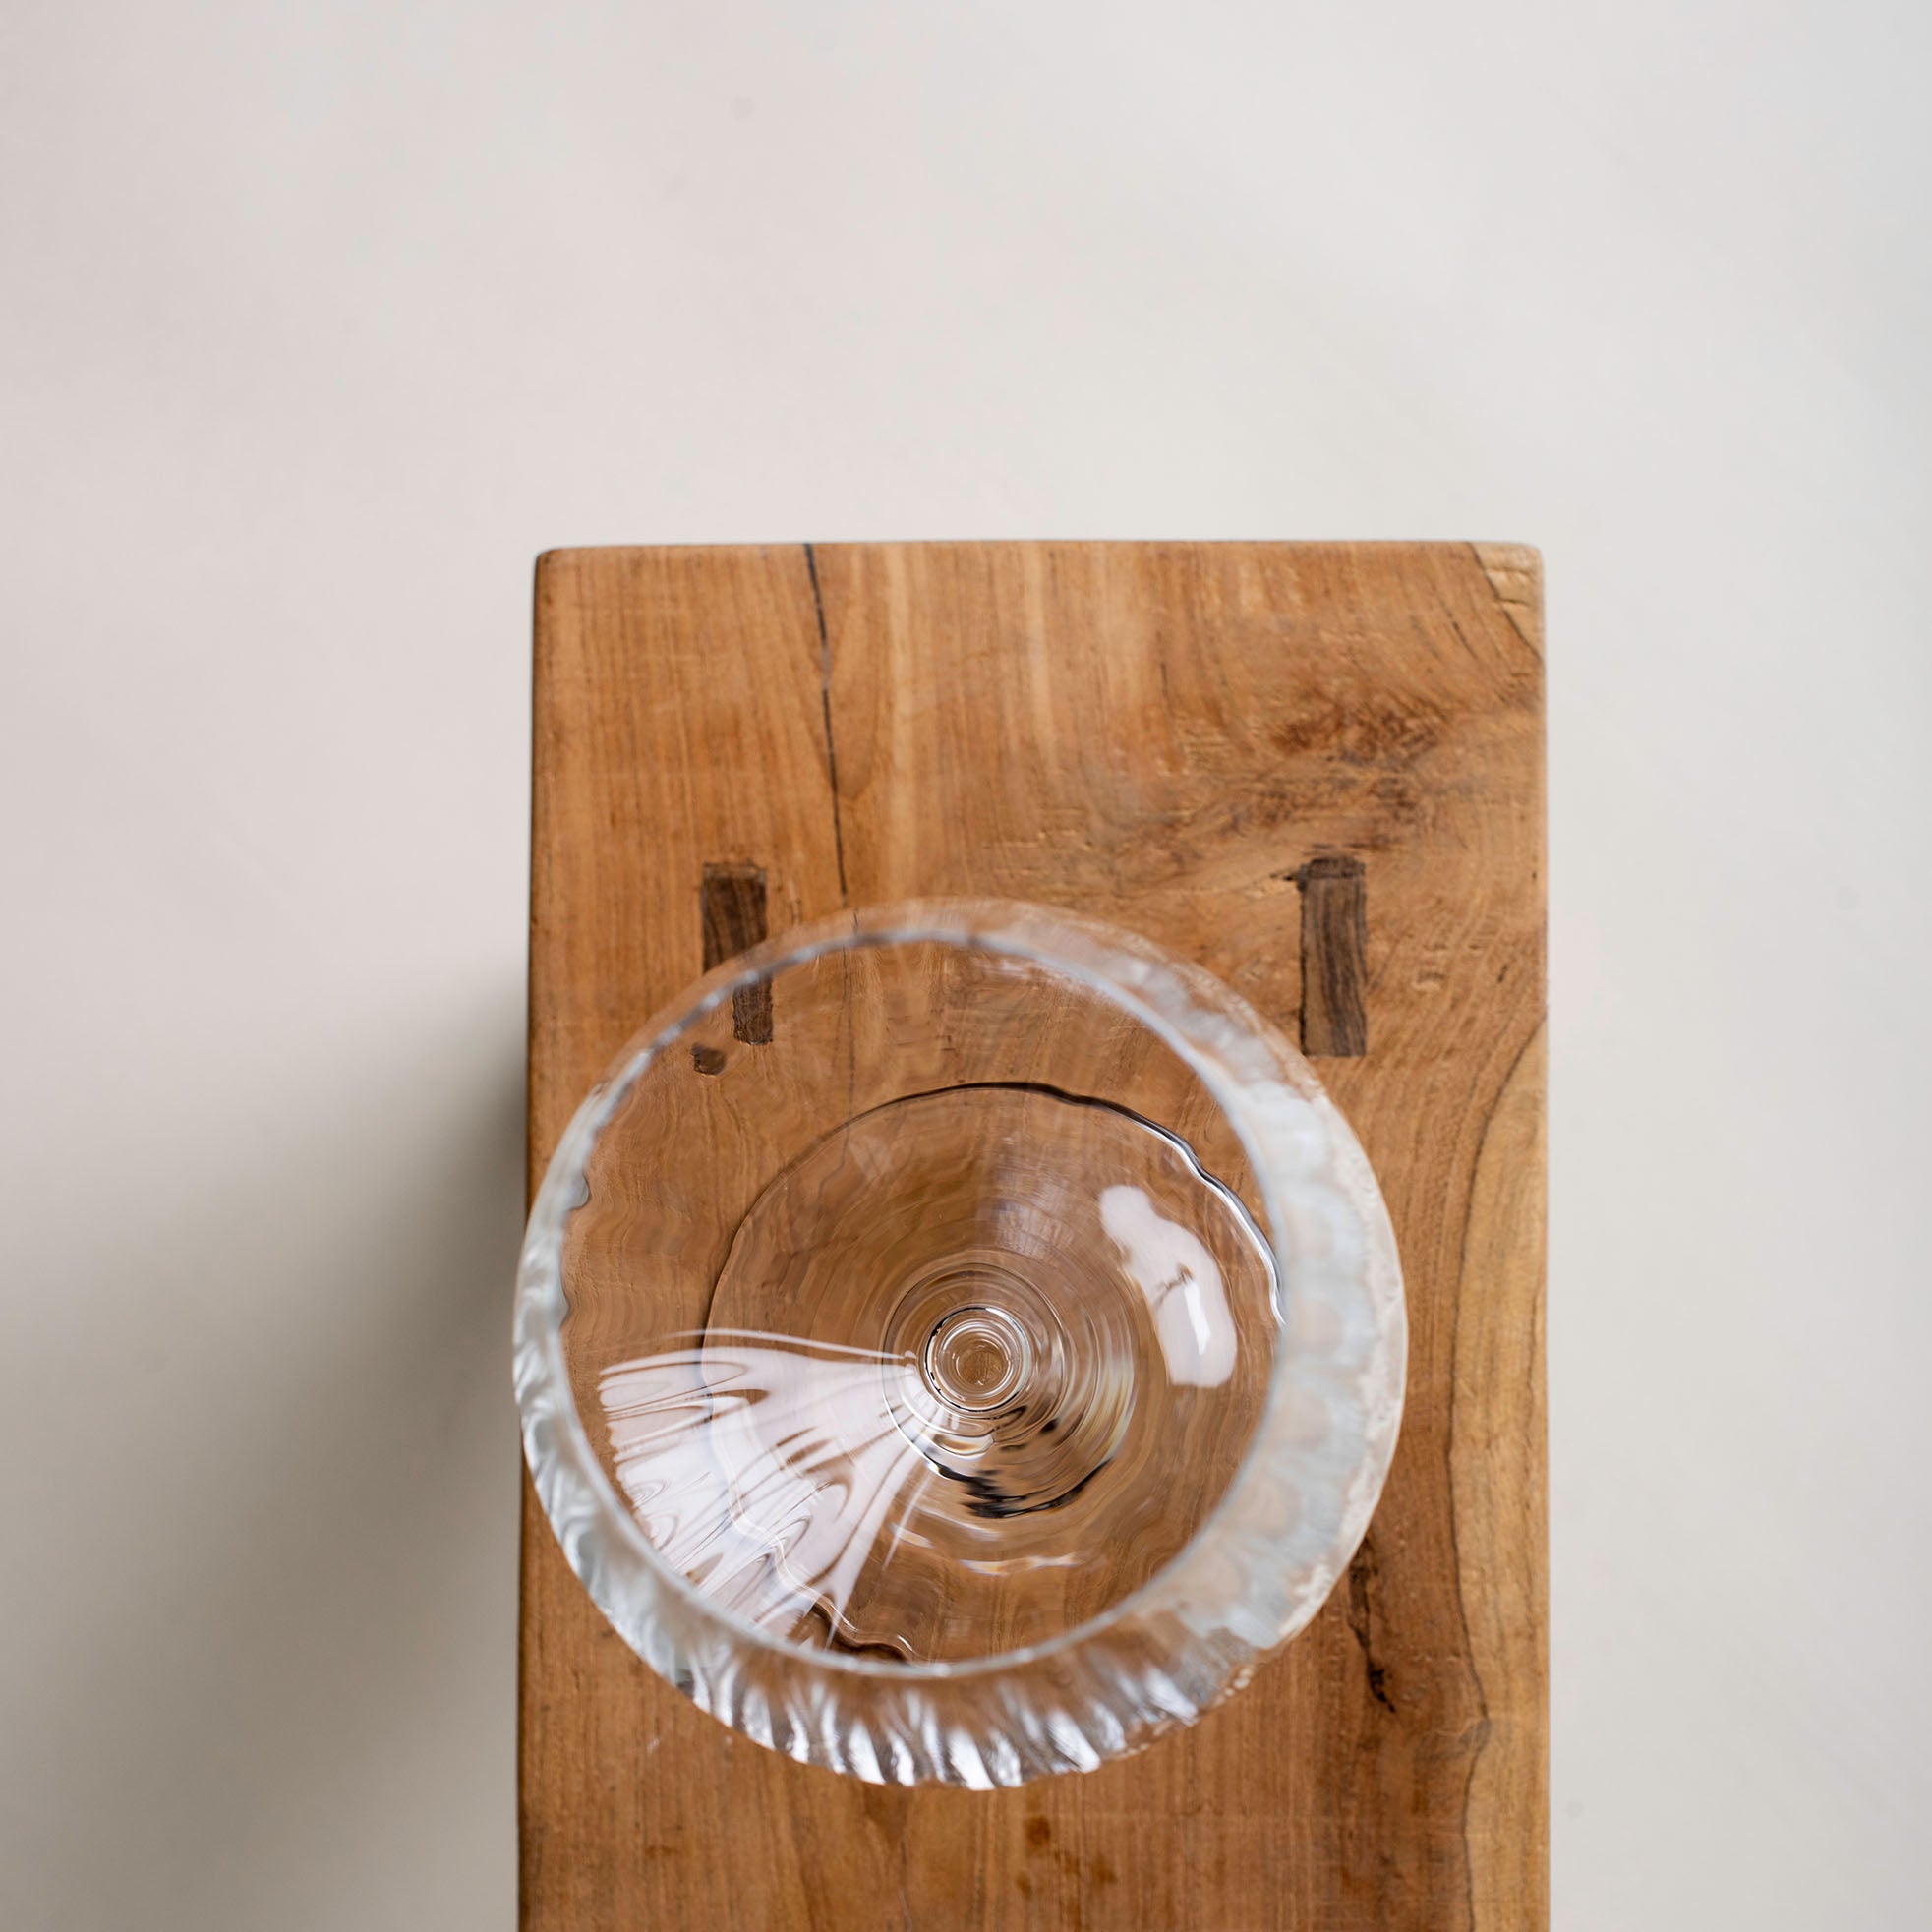 Gin und Tonic Glas von oben aus Kristallglas mit einem Volumen von 640 ml. Das Glas hat eine erhöhte Bruchfestigkeit und ist spülmaschinengeeignet.